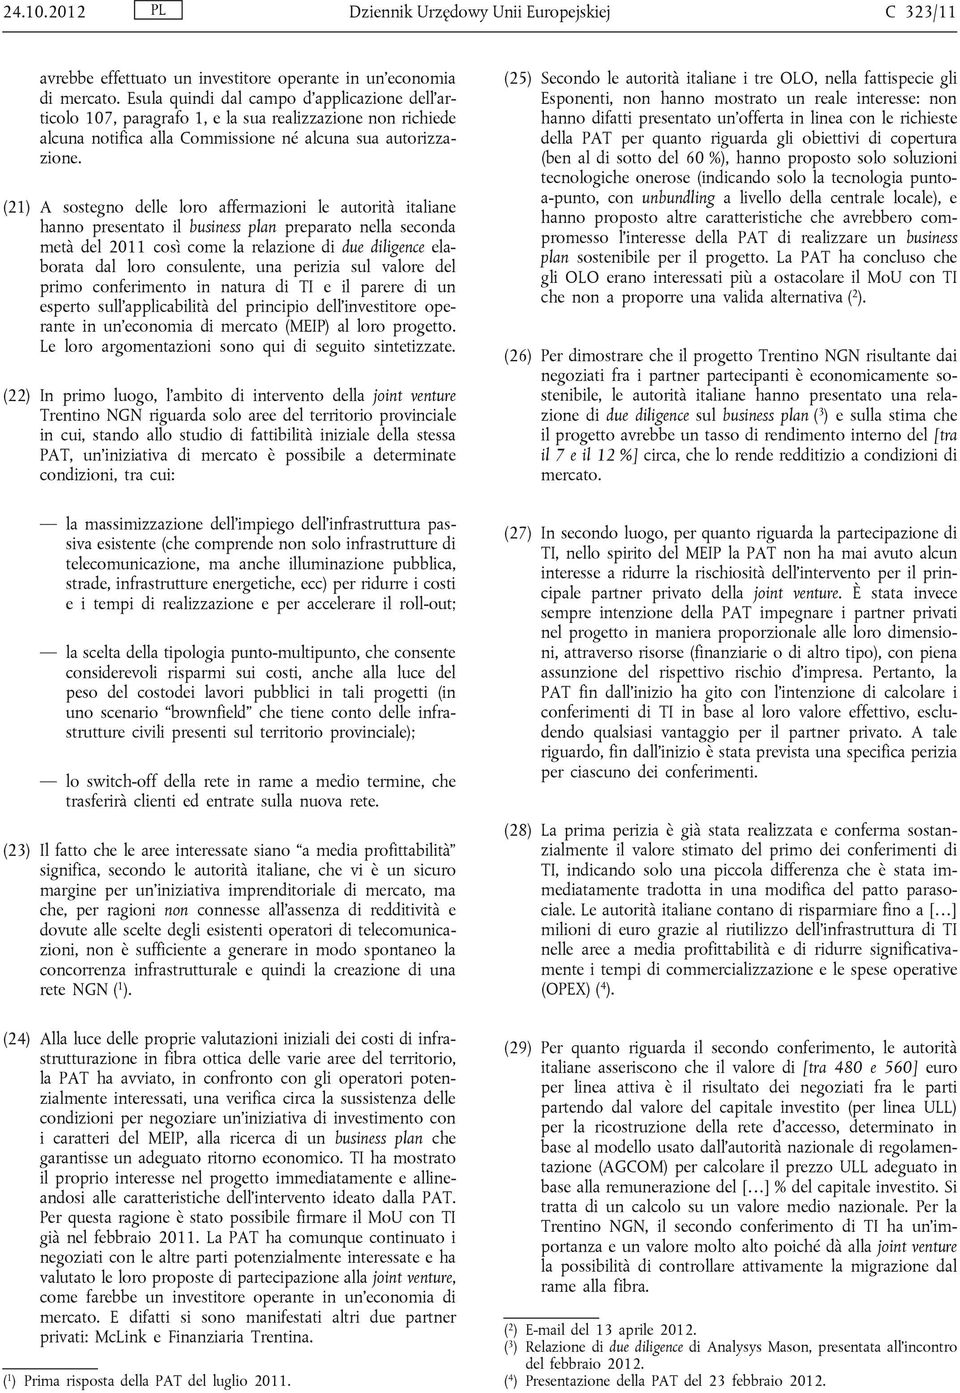 (21) A sostegno delle loro affermazioni le autorità italiane hanno presentato il business plan preparato nella seconda metà del 2011 così come la relazione di due diligence elaborata dal loro